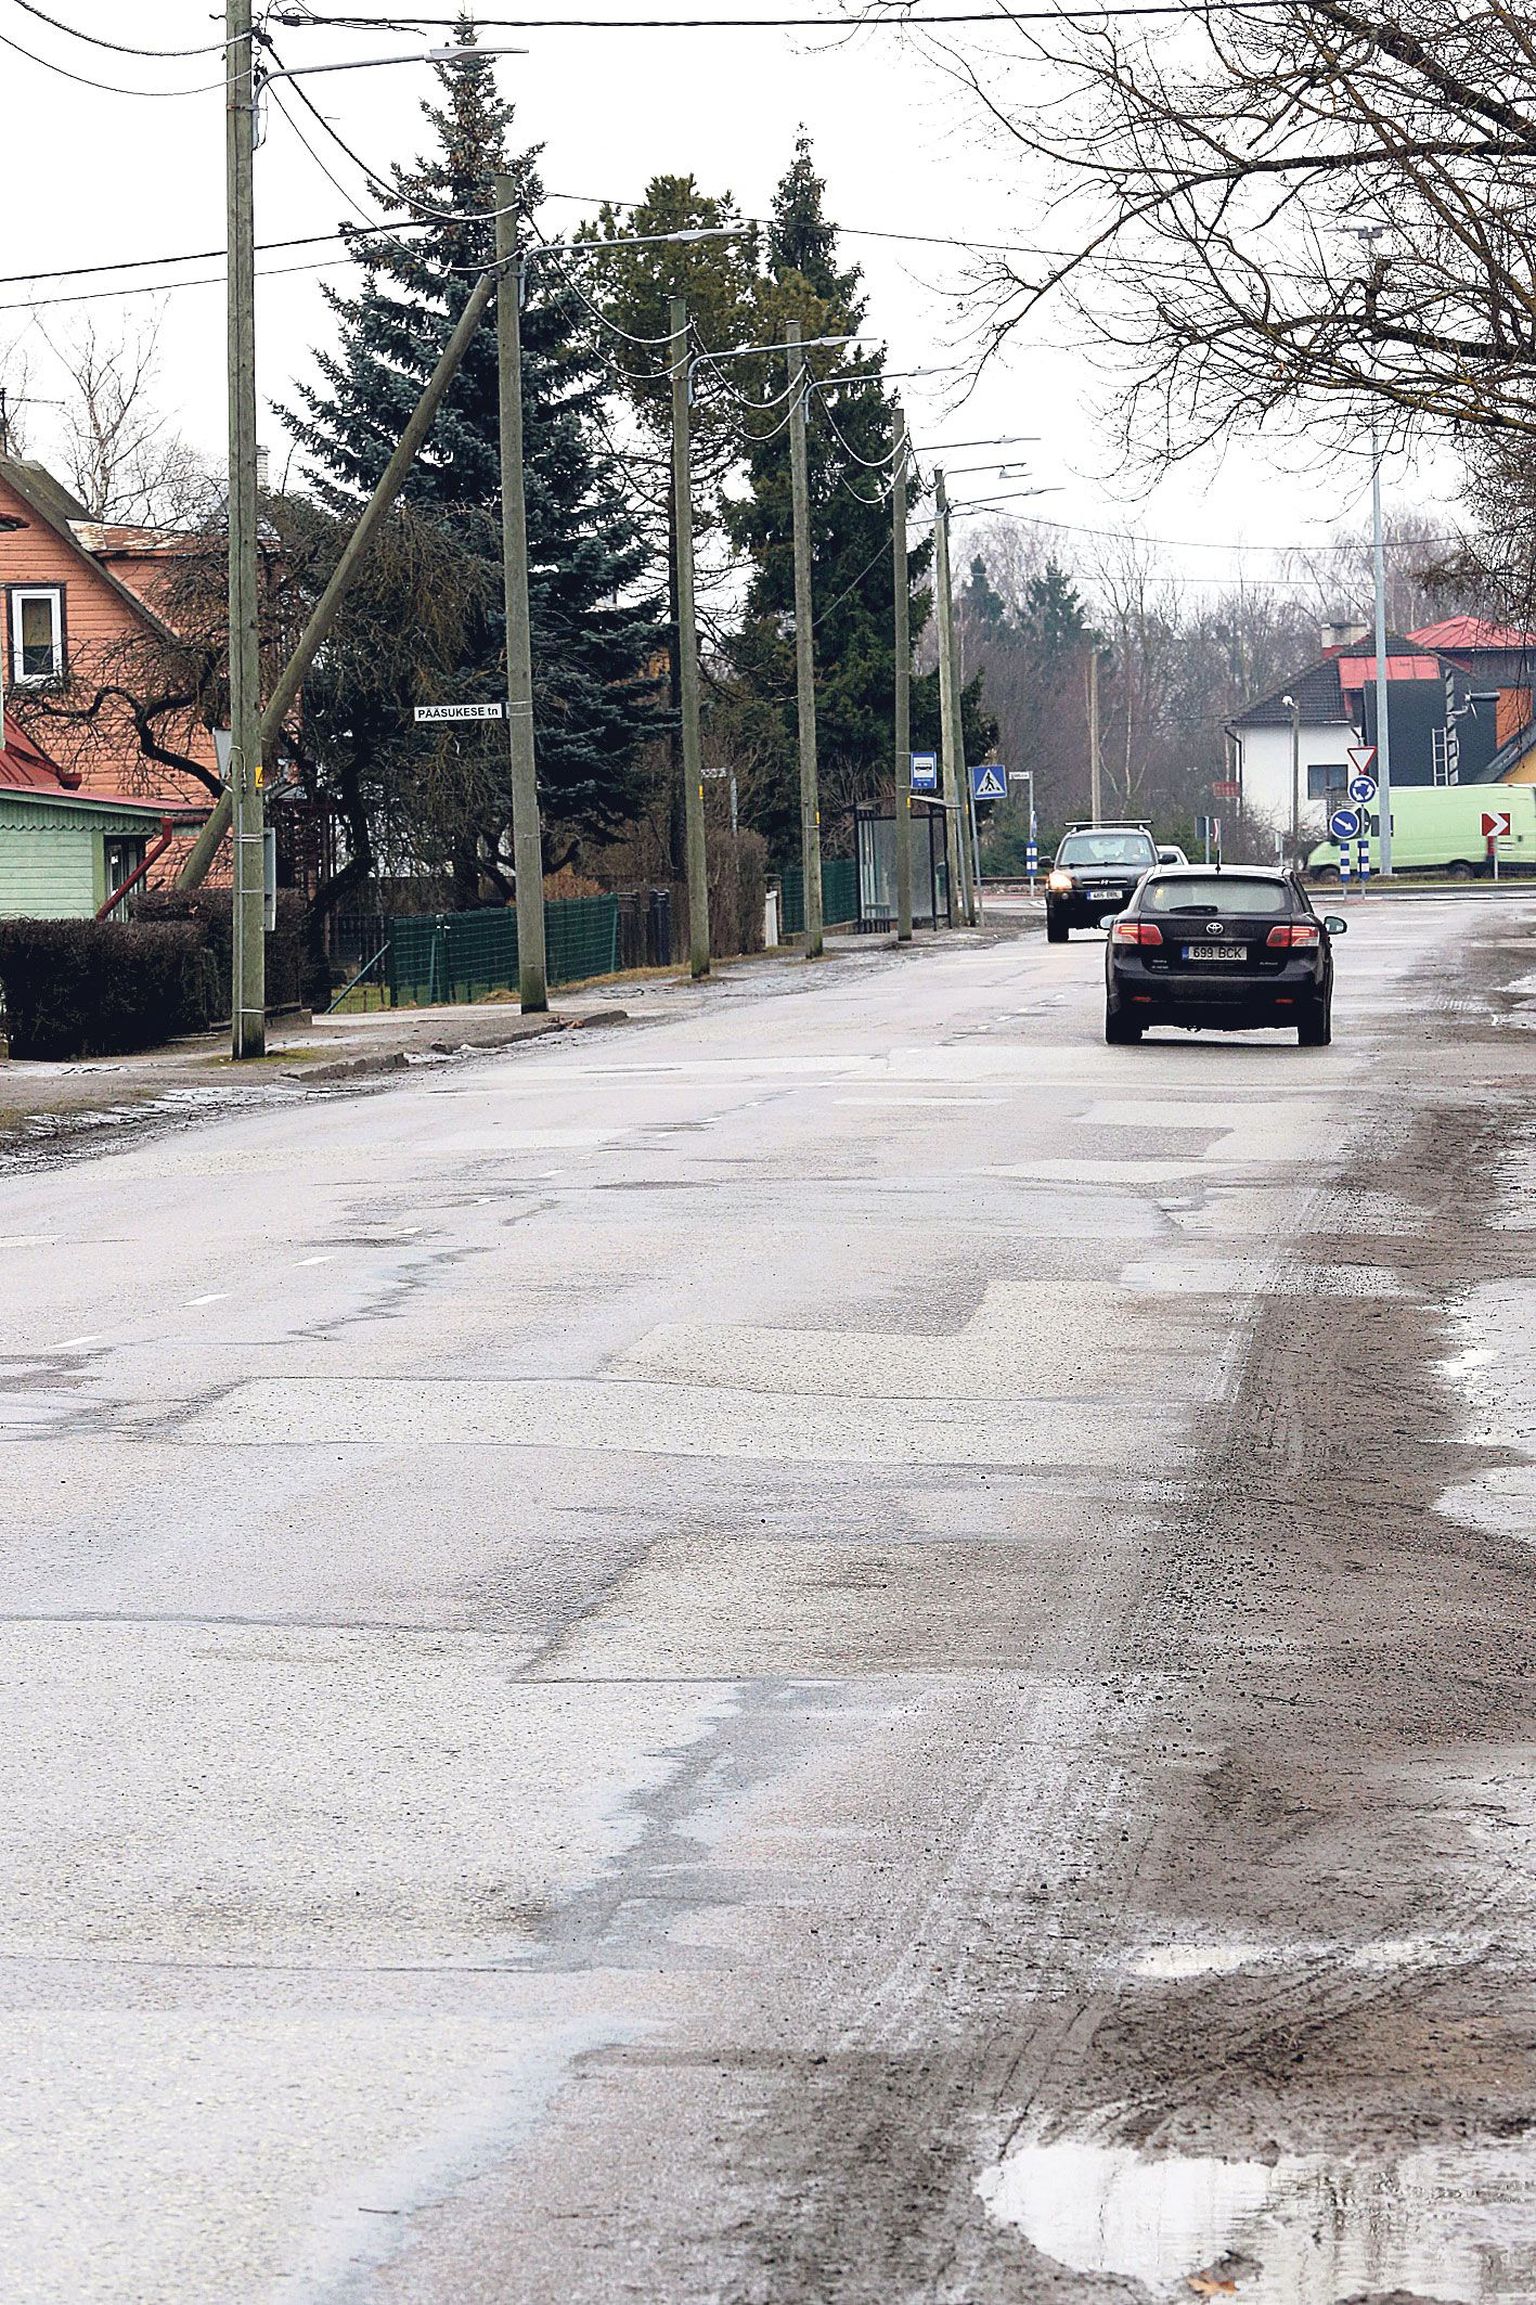 Mullu tehtud Tartu põhi- ja jaotustänavate seisukorra uuringu järgi on Soinaste tänav kõige ebatasasem, tänava keskmine IRI-arv ehk sõidumugavust kirjeldav väärtus on 8,01 mm/m. Mida väiksem on IRI, seda tasasem on teekate. Uuringuid teinud teede tehnokeskuse andmetel on senised mõõtmised linna teedel-tänavatel näidanud, et IRI väikseimad väärtused on vahemikus 0,7–1,5 mm/m.